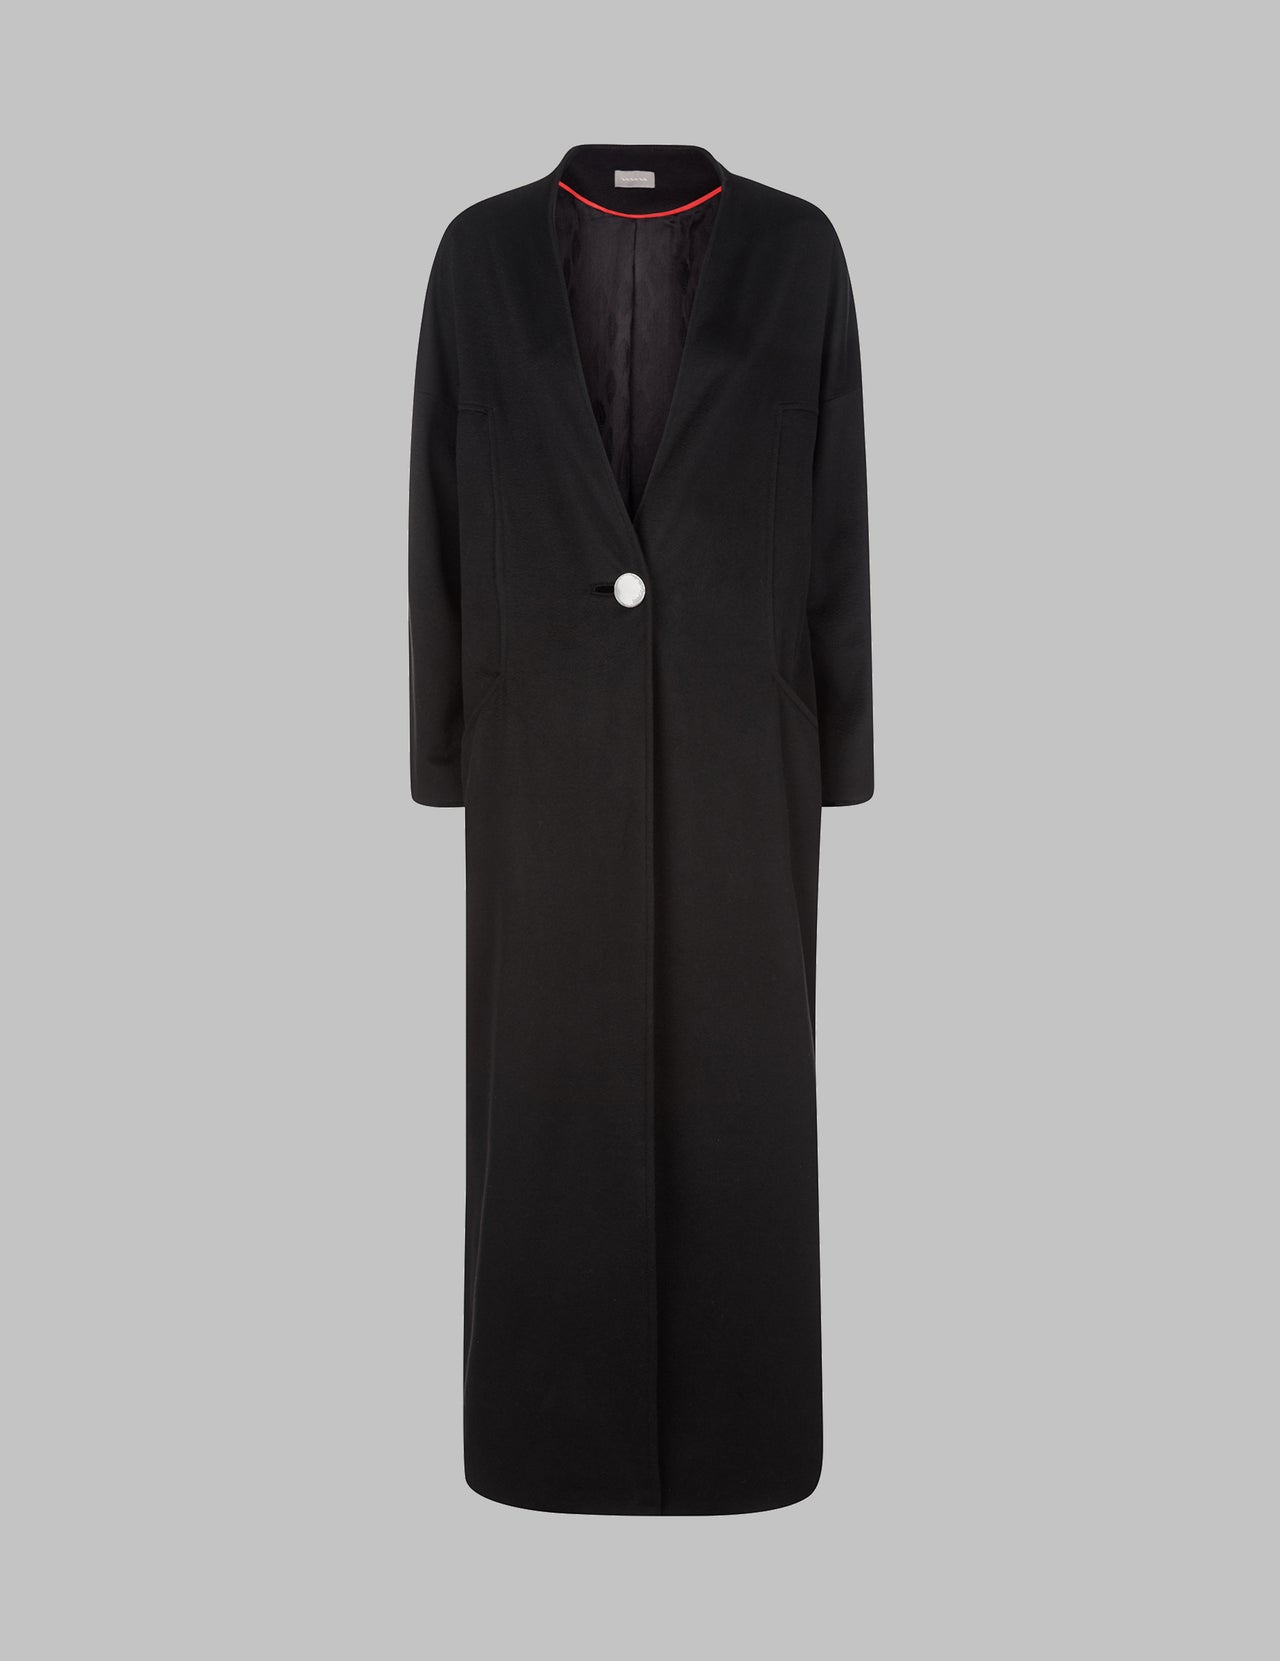  Black Long Cashmere Coat 